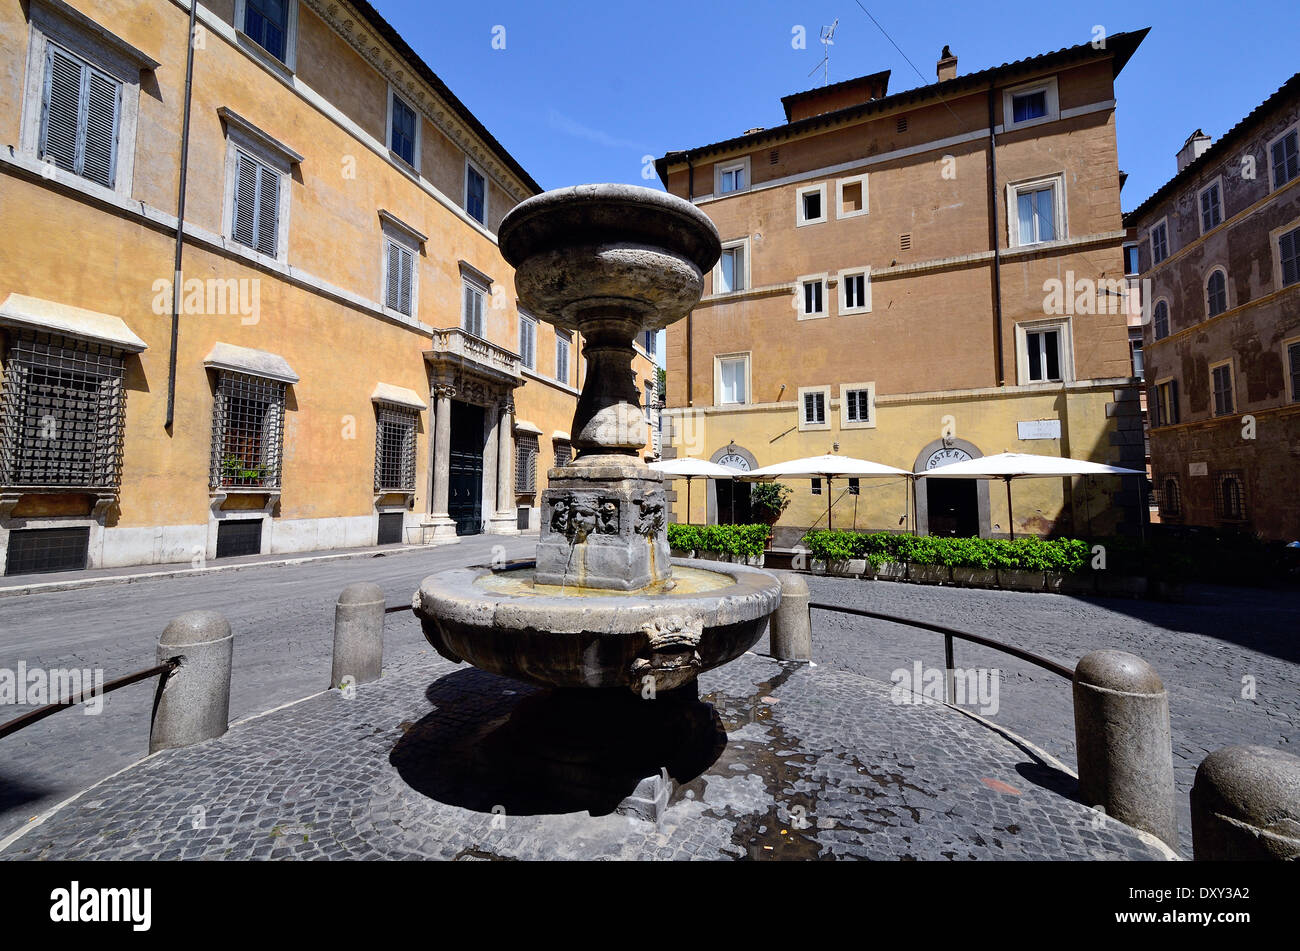 Fontana di piazza San Simeone   roma Stock Photo